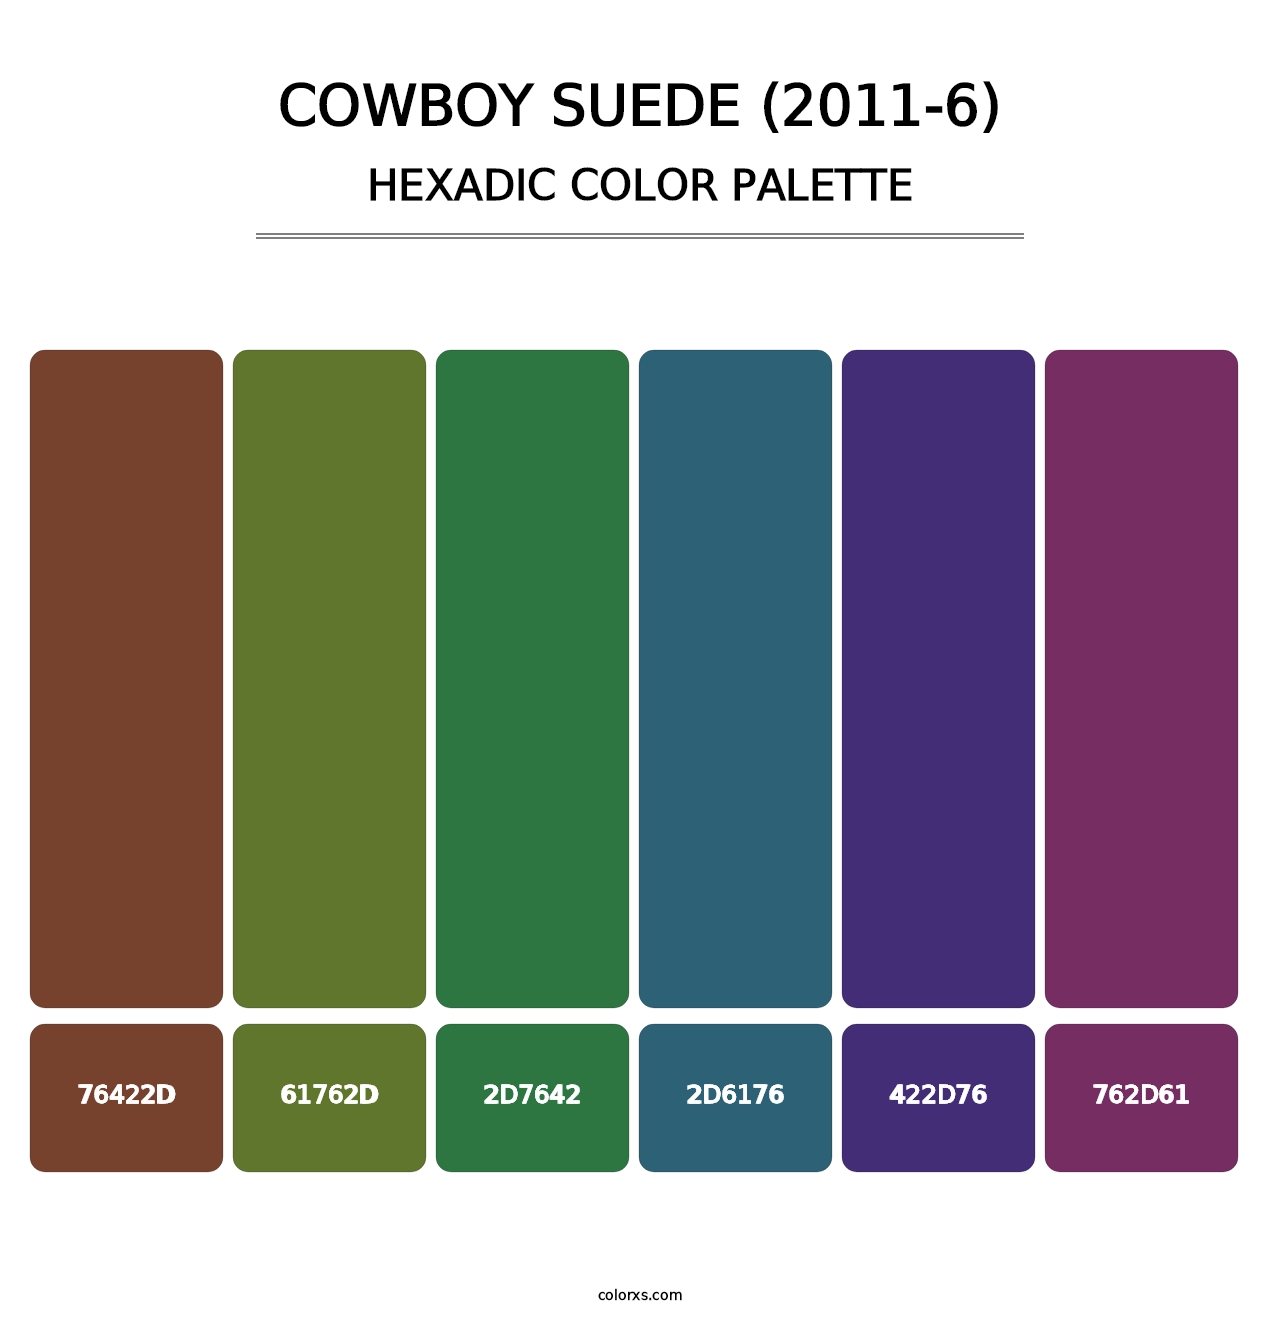 Cowboy Suede (2011-6) - Hexadic Color Palette